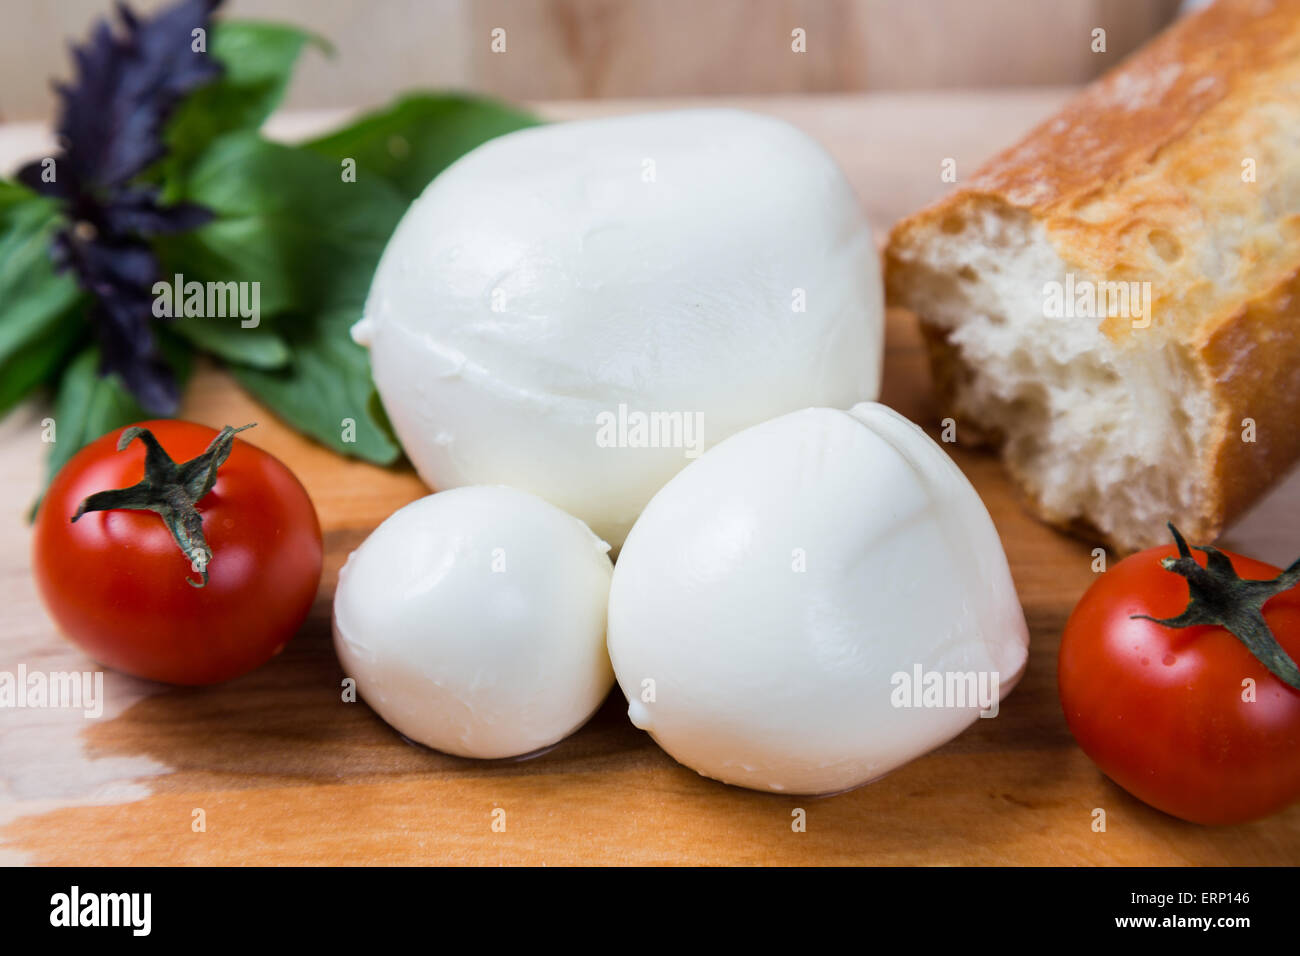 Kugeln Mozzarella unterschiedlicher Größe mit Cherry Tomaten, Brot und Basilikum auf hölzernen Hintergrund Stockfoto